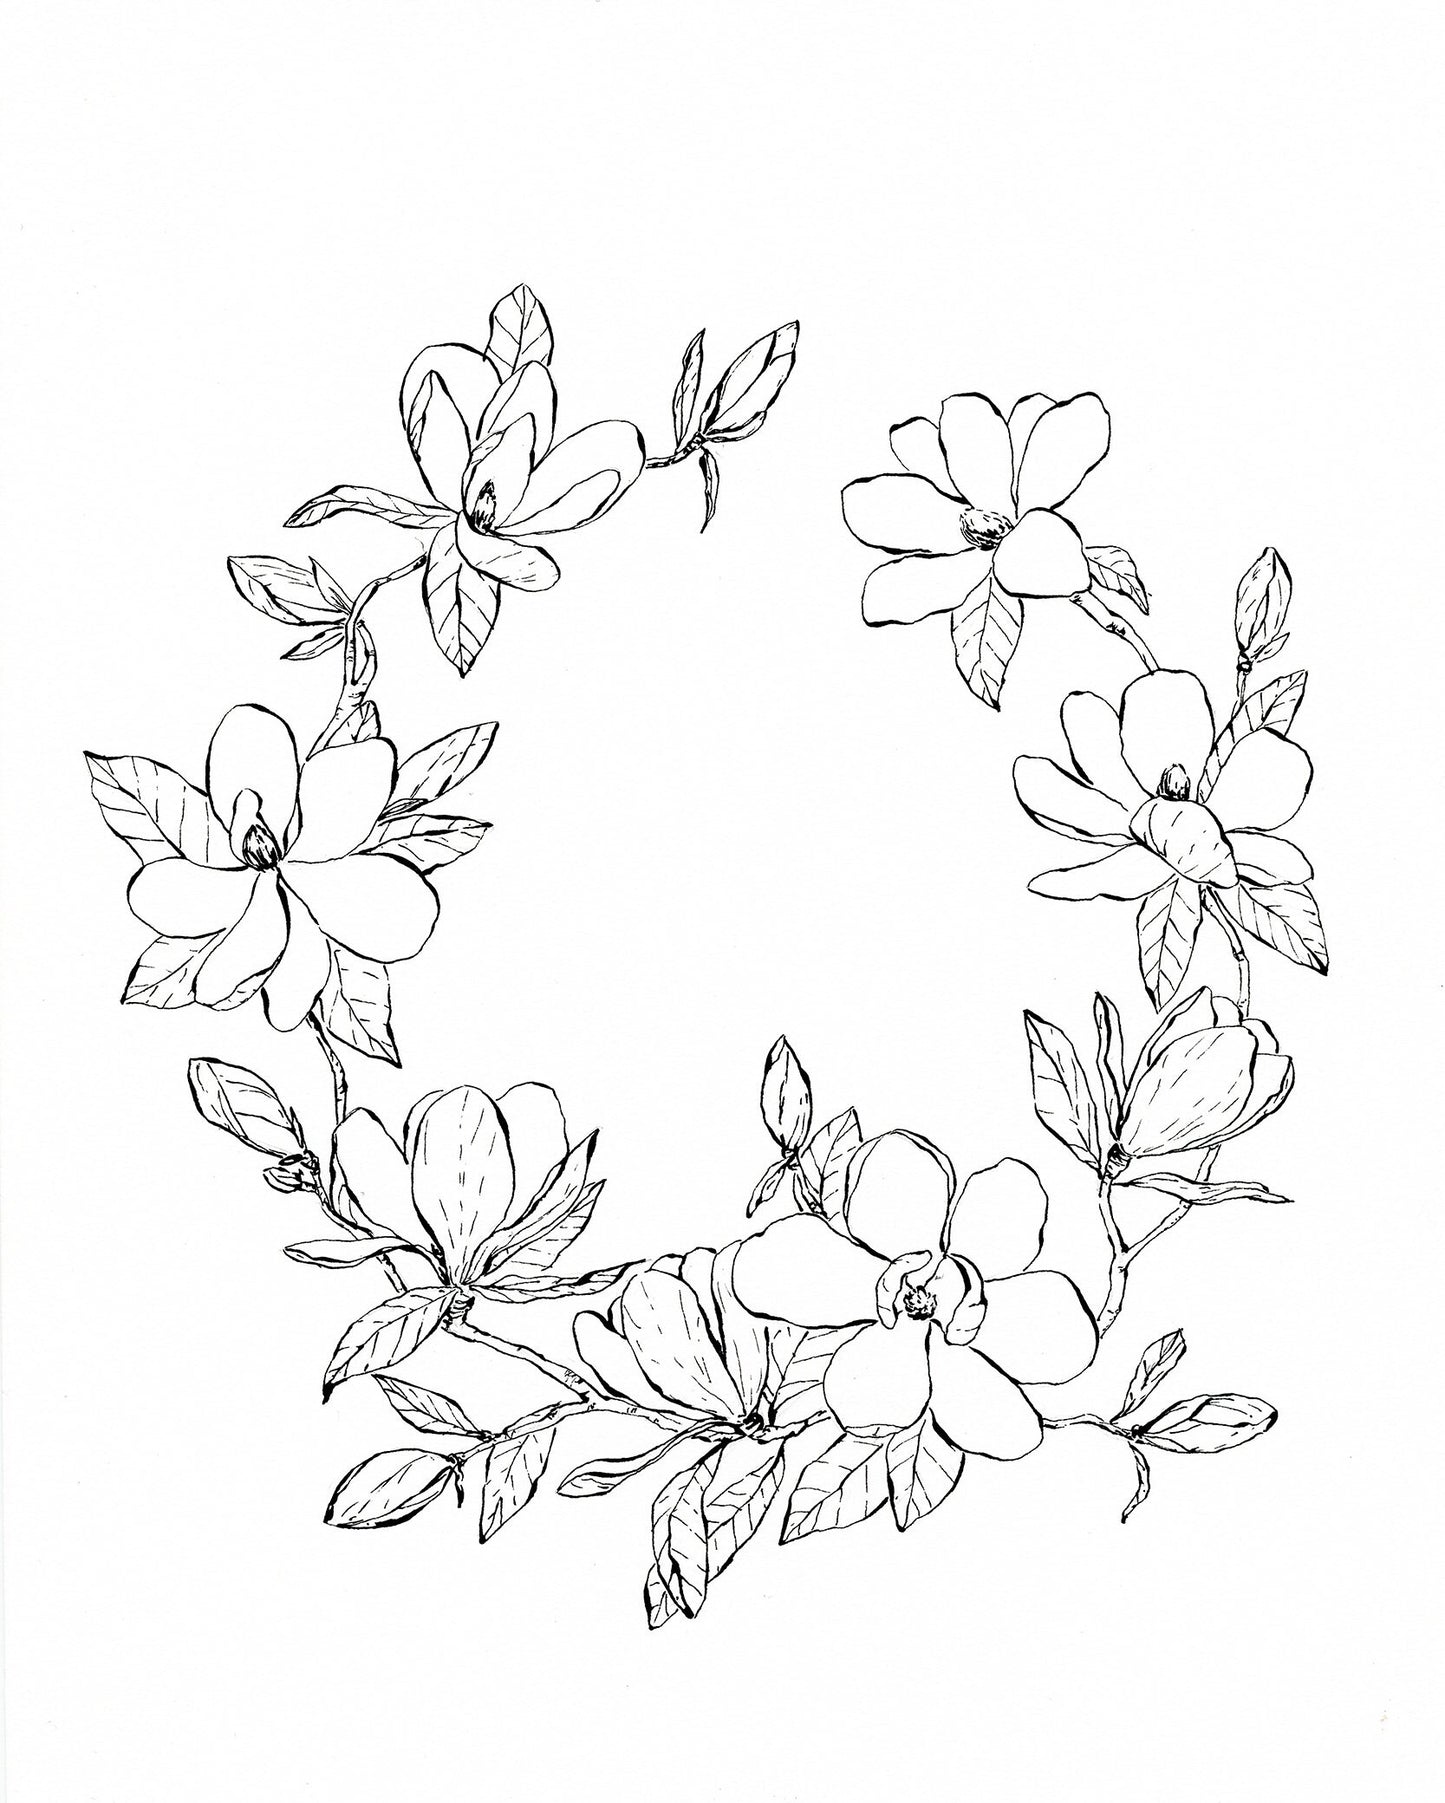 'Magnolia Wreath' original ink illustration, 8.5x11in